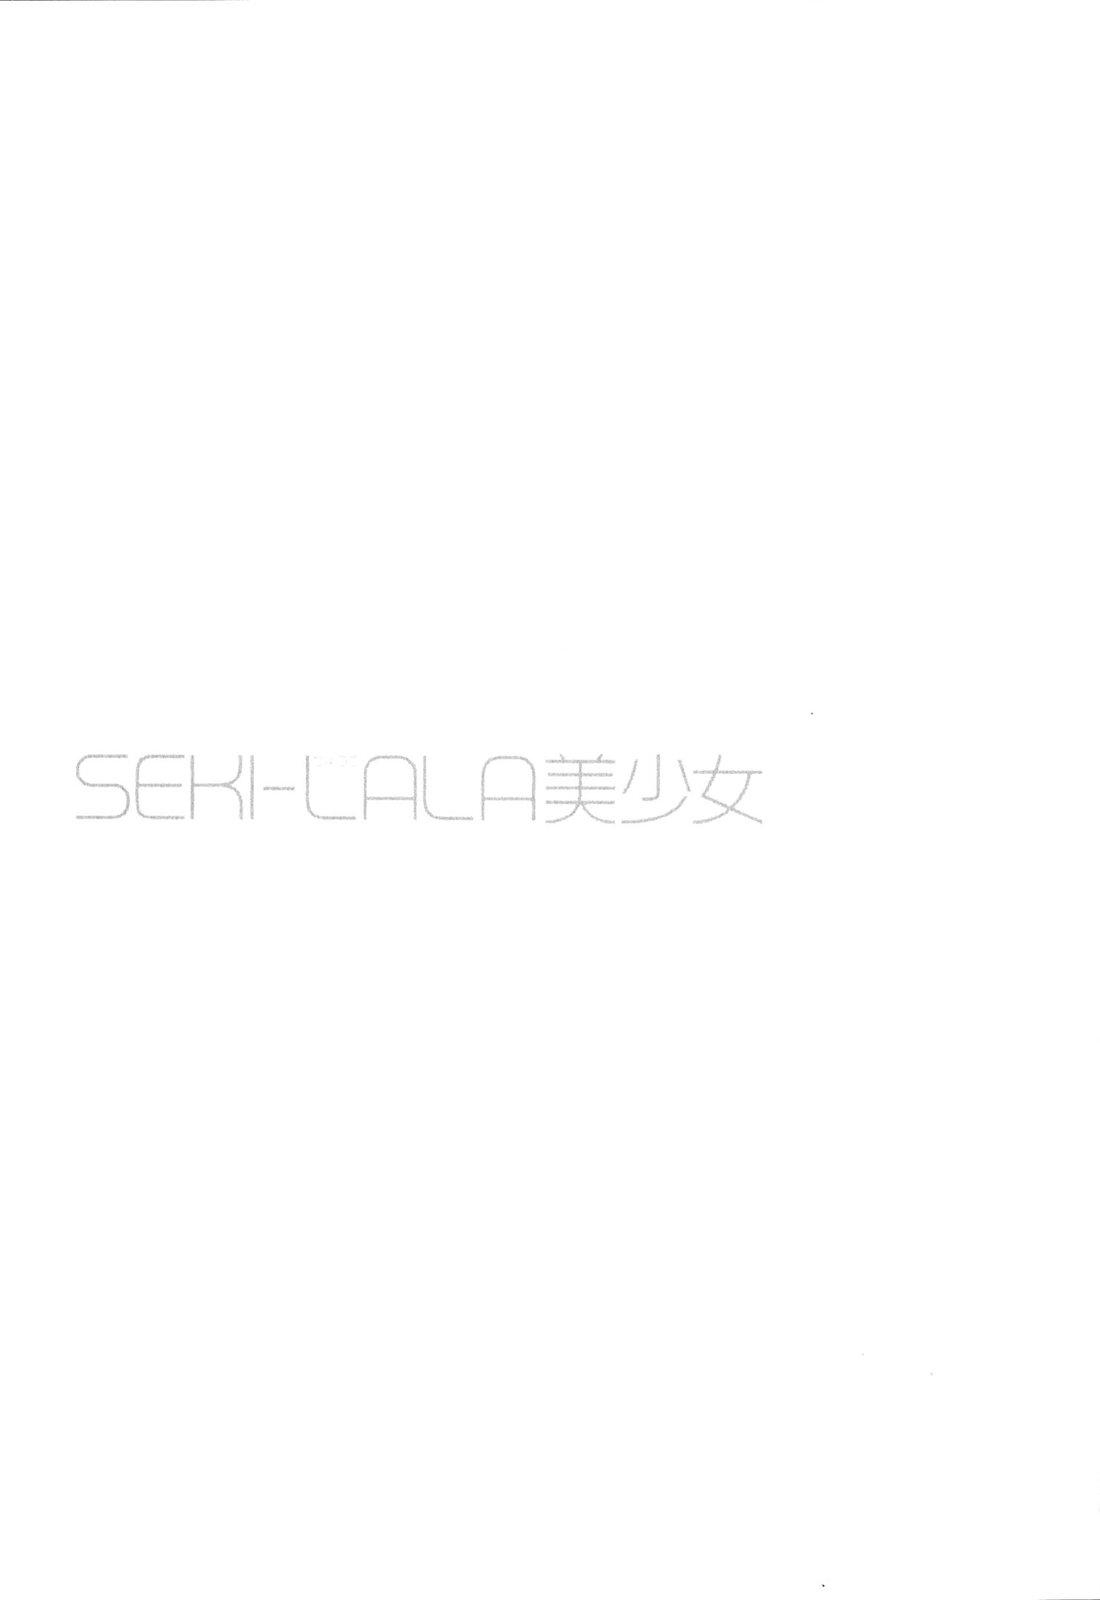 SEKI-LALA Bishoujo 37